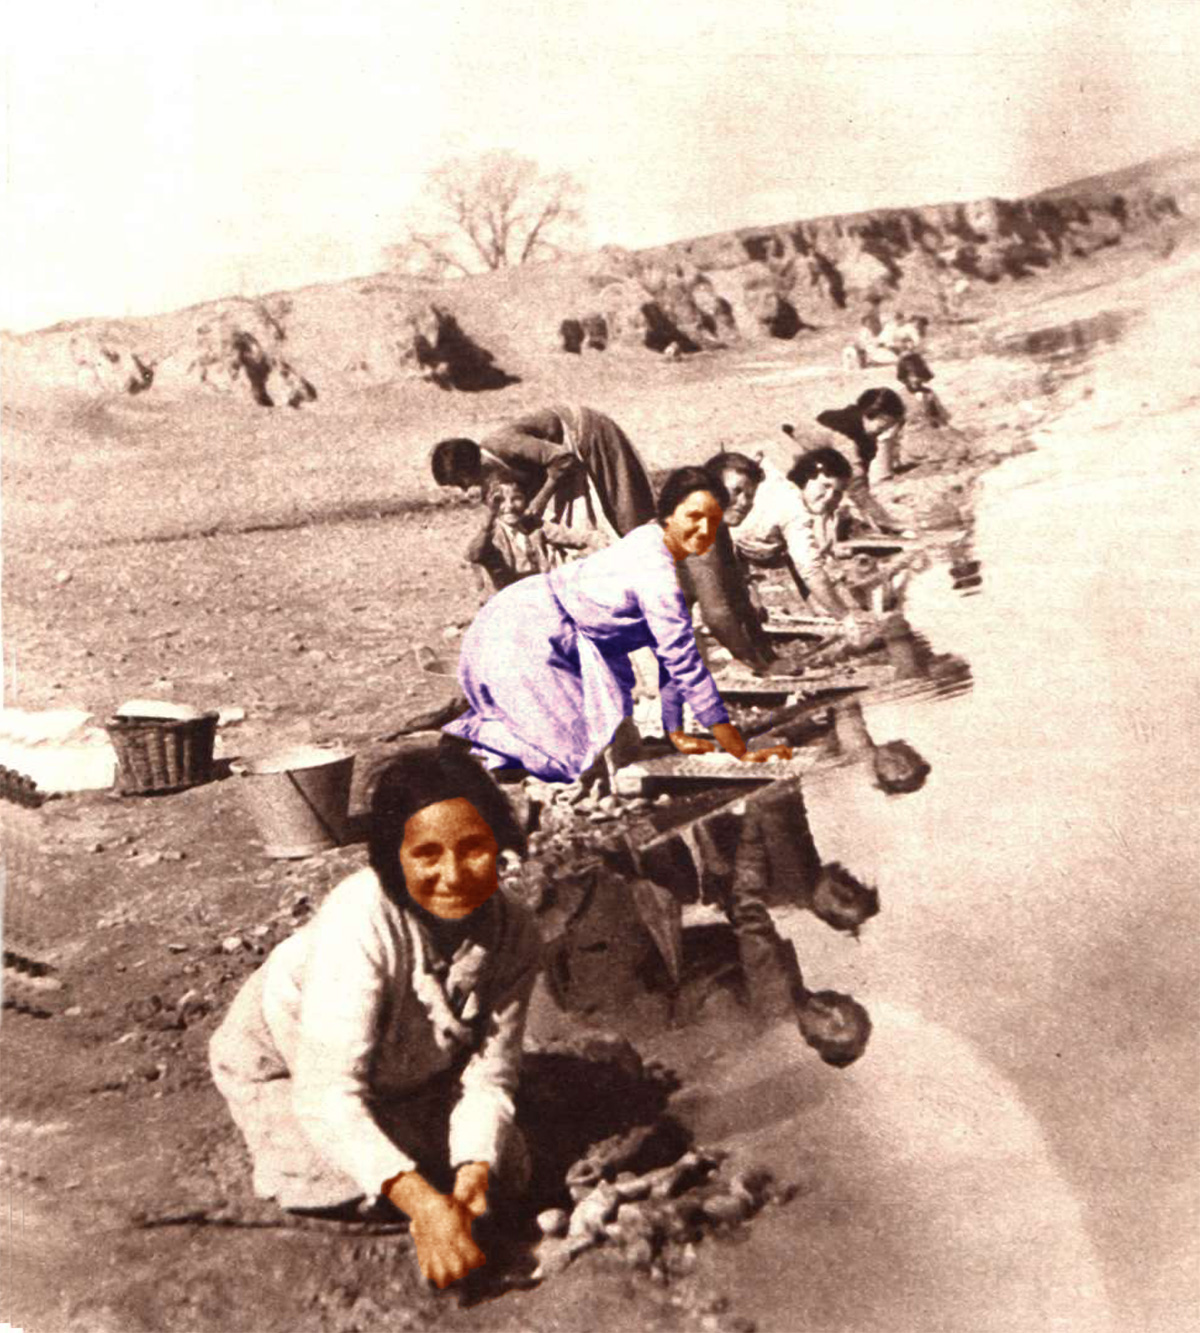 Fotografía 11 del reportaje de Josefina Carabias de 1934 sobre la comunidad de campesinos de Malpica de Tajo